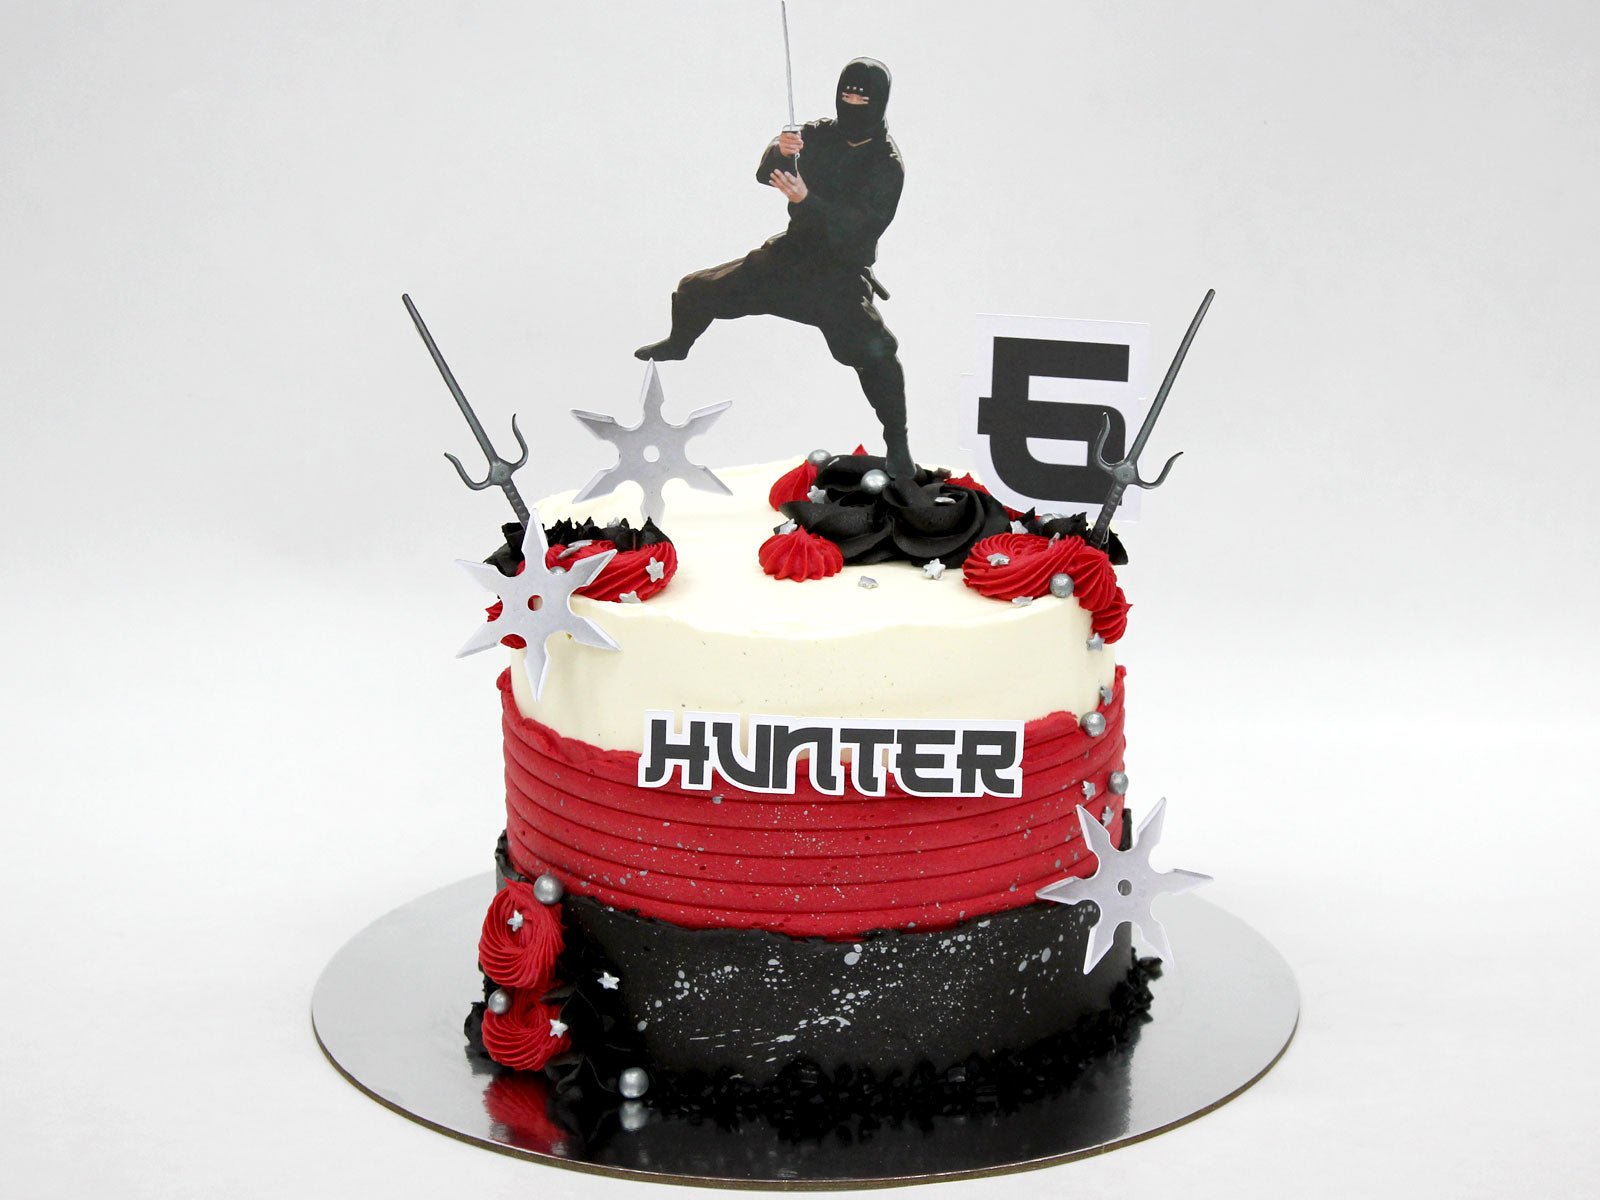 Pin by BCakeNY on BCakeNY CAKES | Ninja birthday cake, Ninja birthday, Ninja  birthday parties